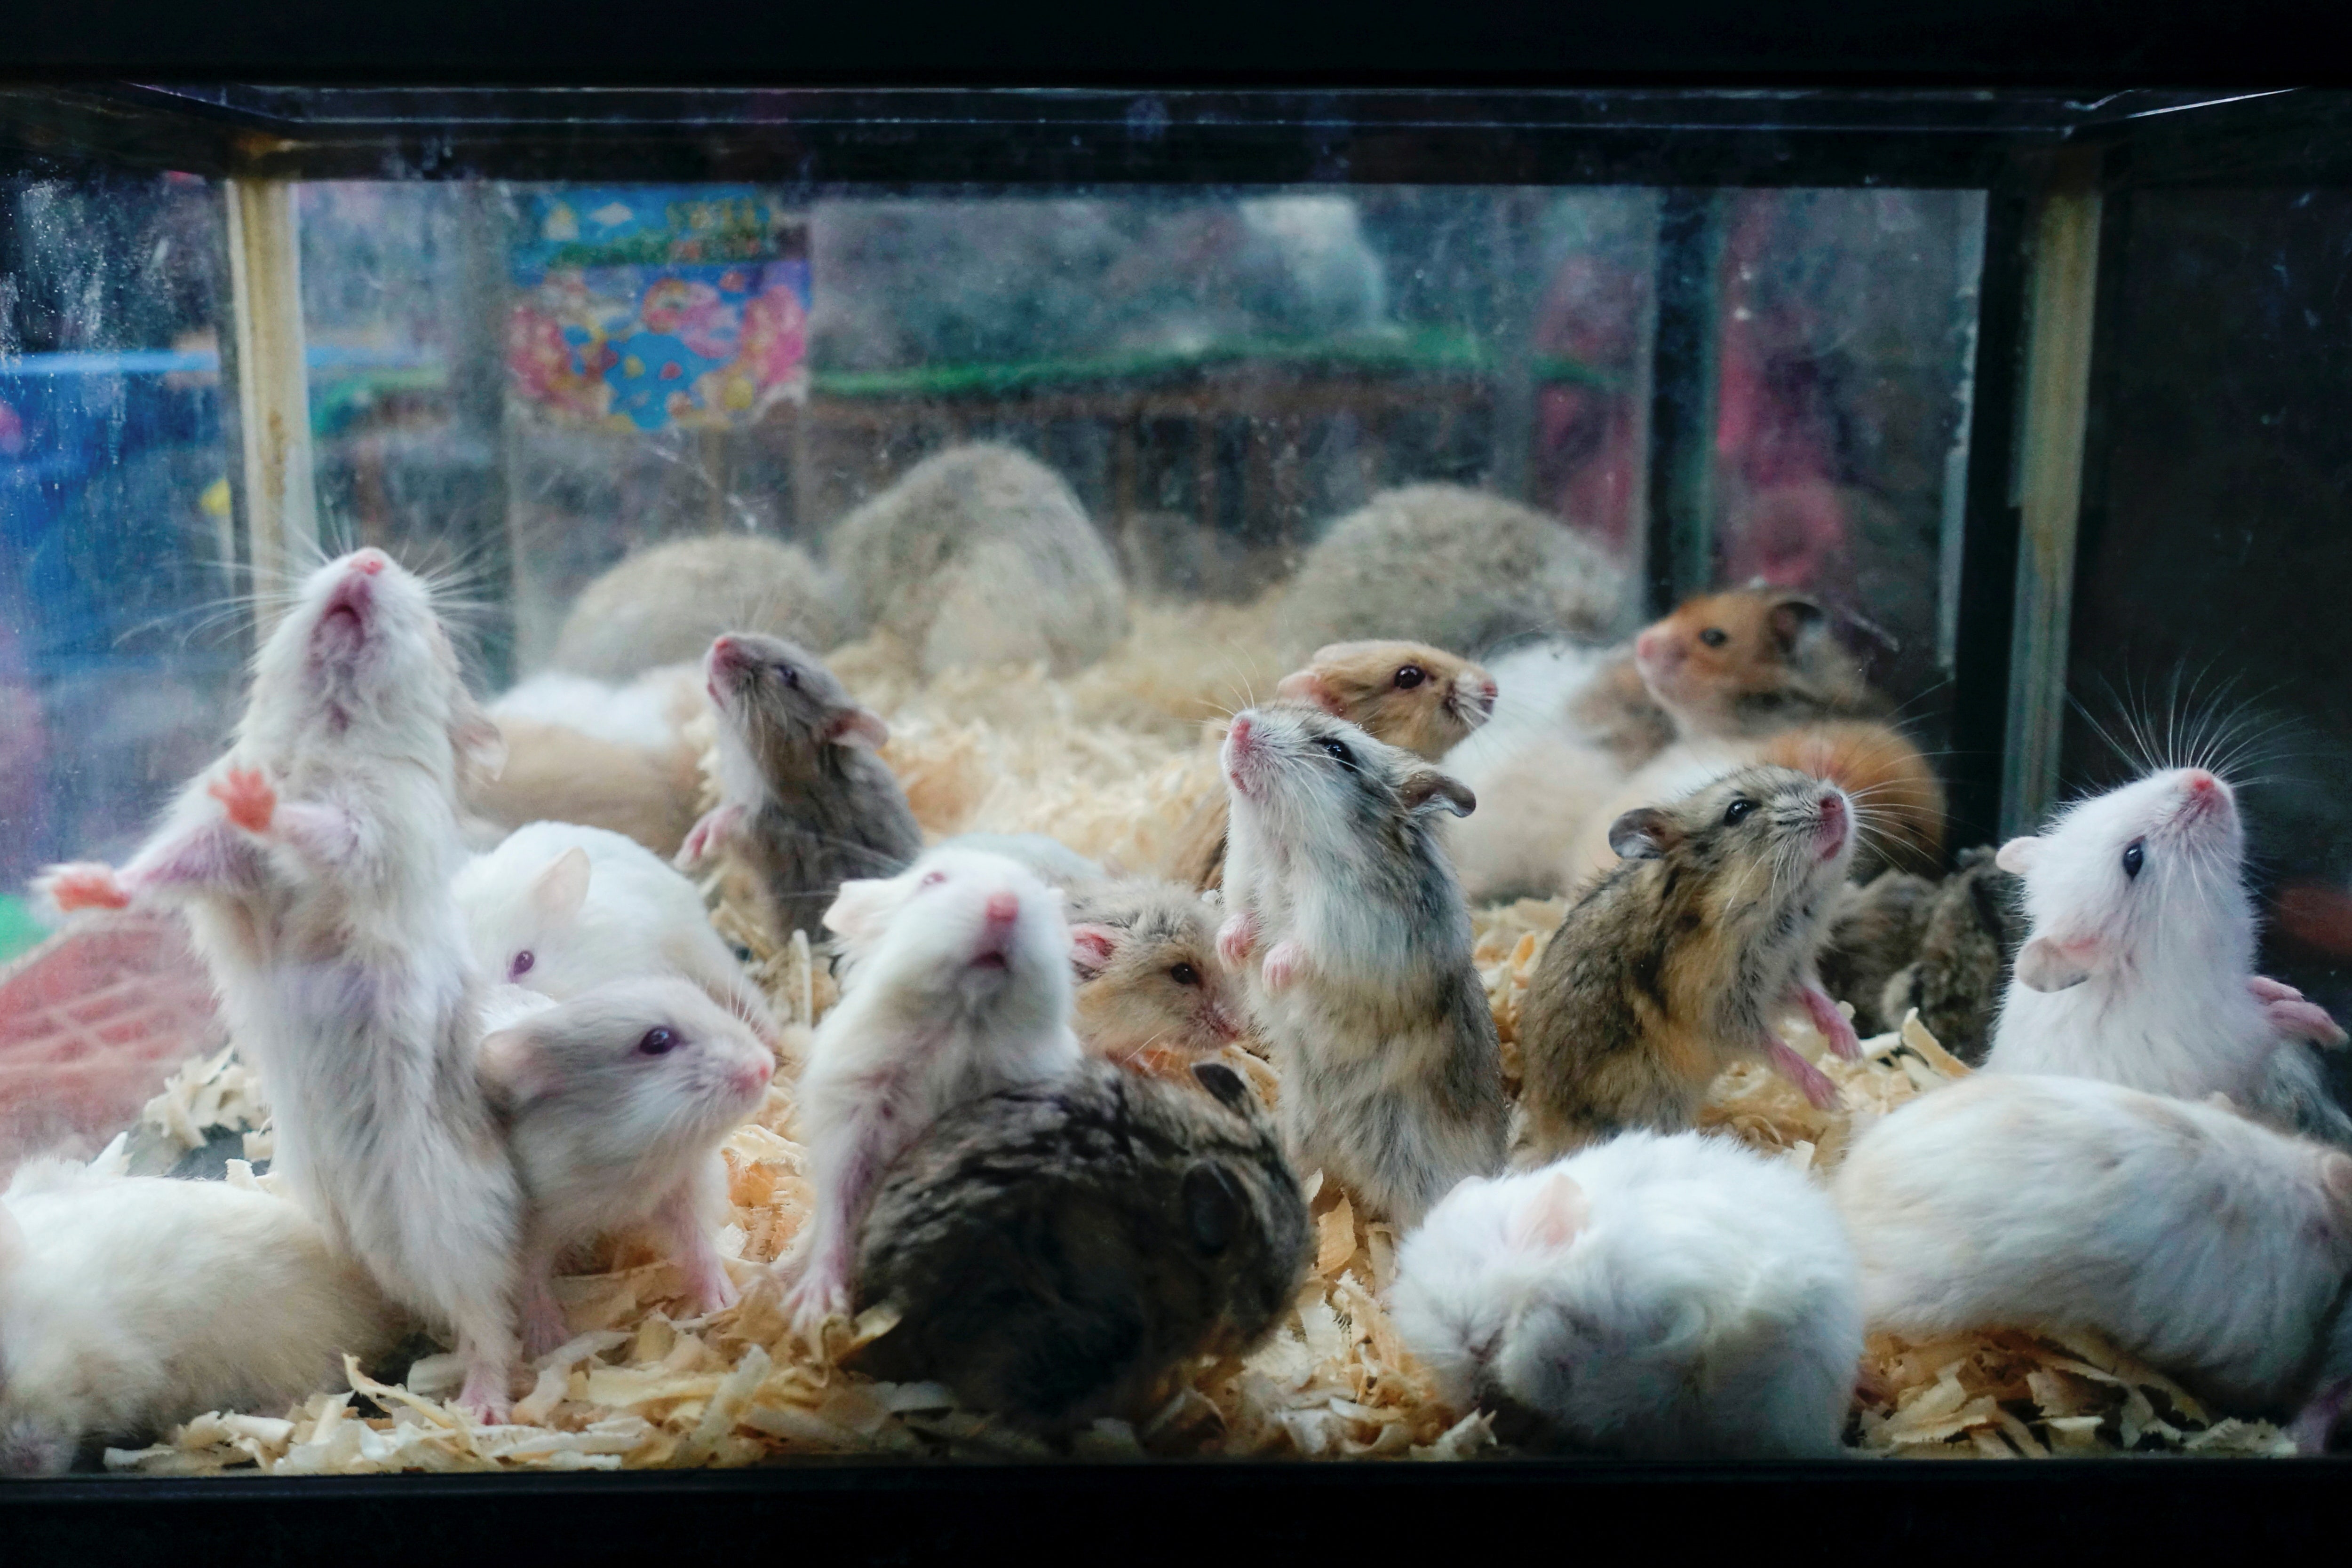 Hong Kong ends year-long hamster import ban: report